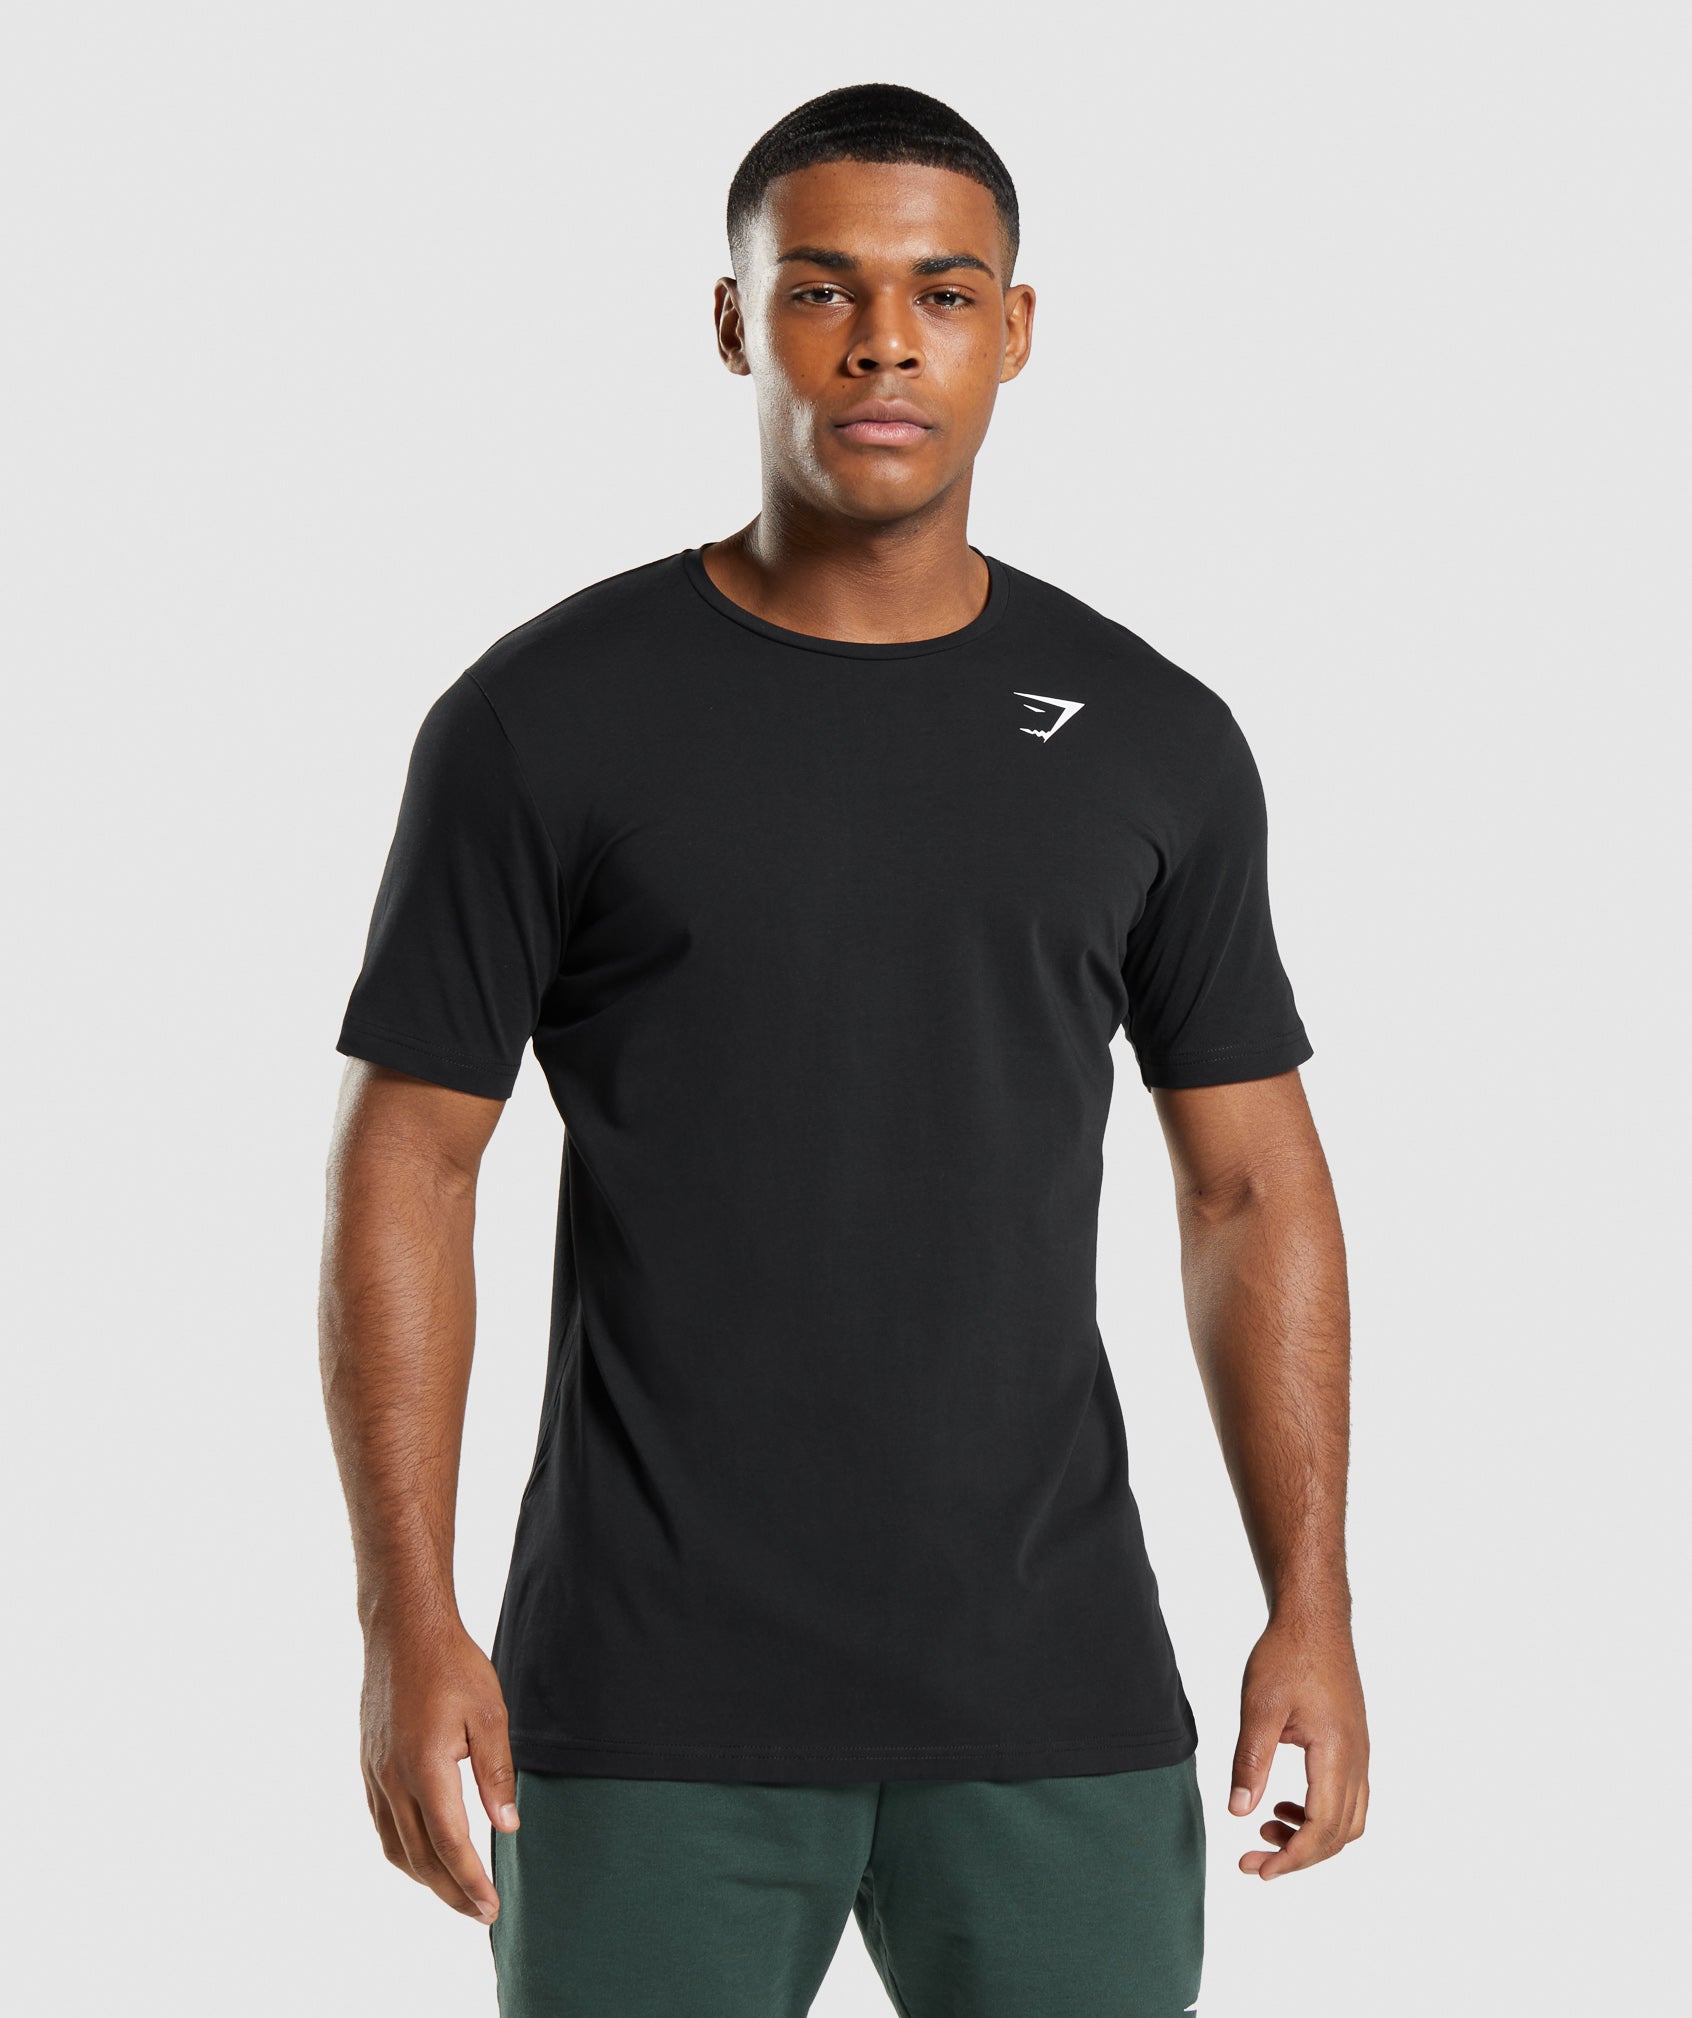 Gymshark Critical T-Shirt - Black